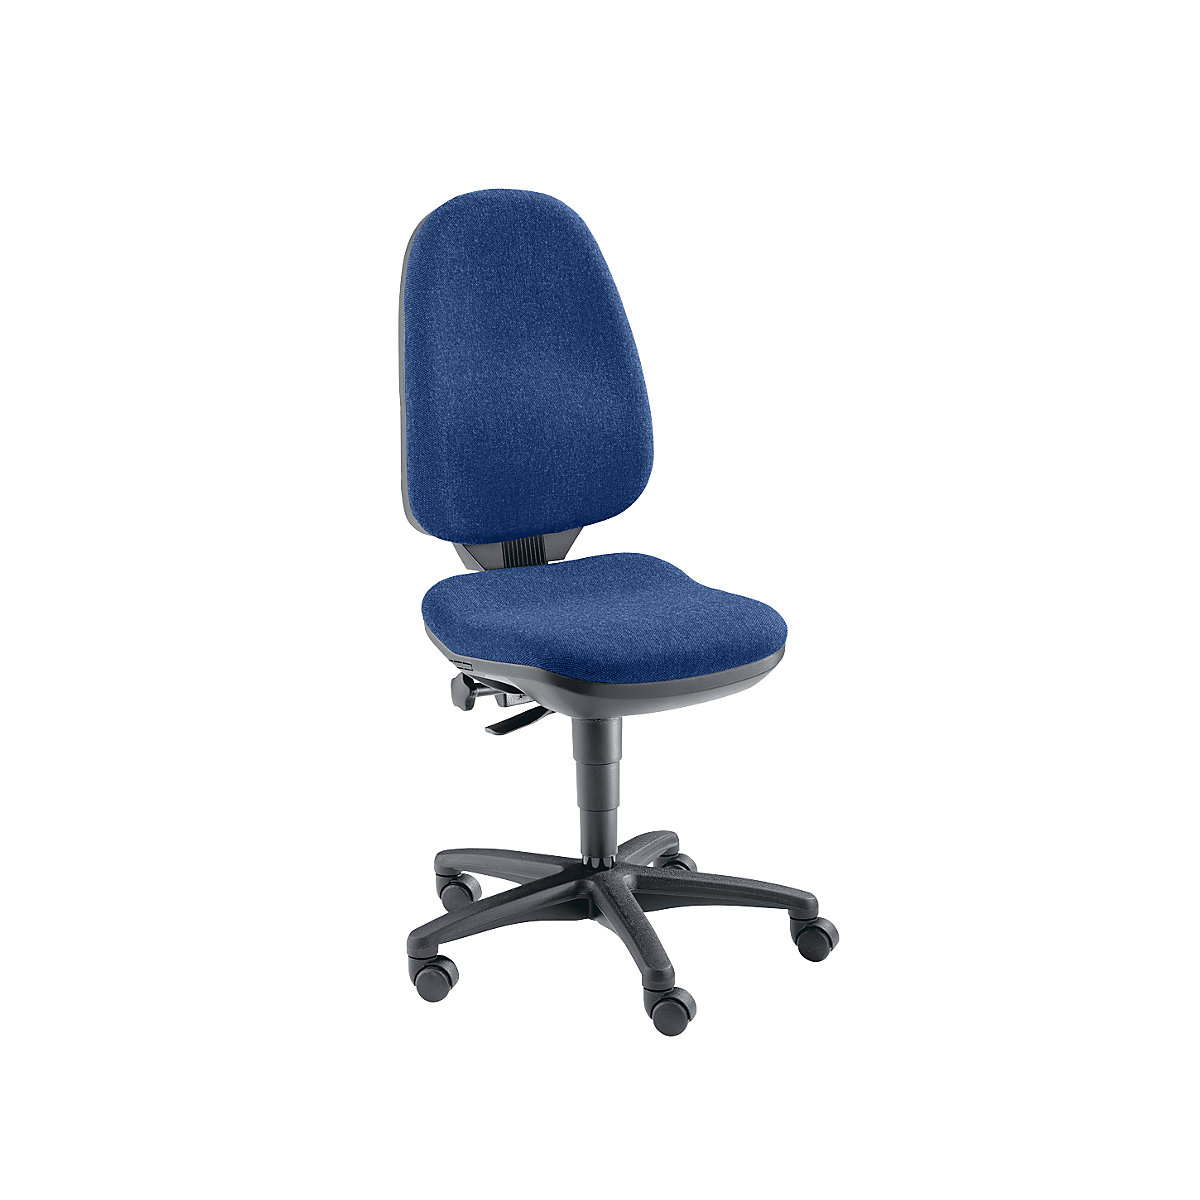 Okretna stolica s potporom za kralježnicu – Topstar, bez naslona za ruke, presvlaka u tamnoplavoj boji-4